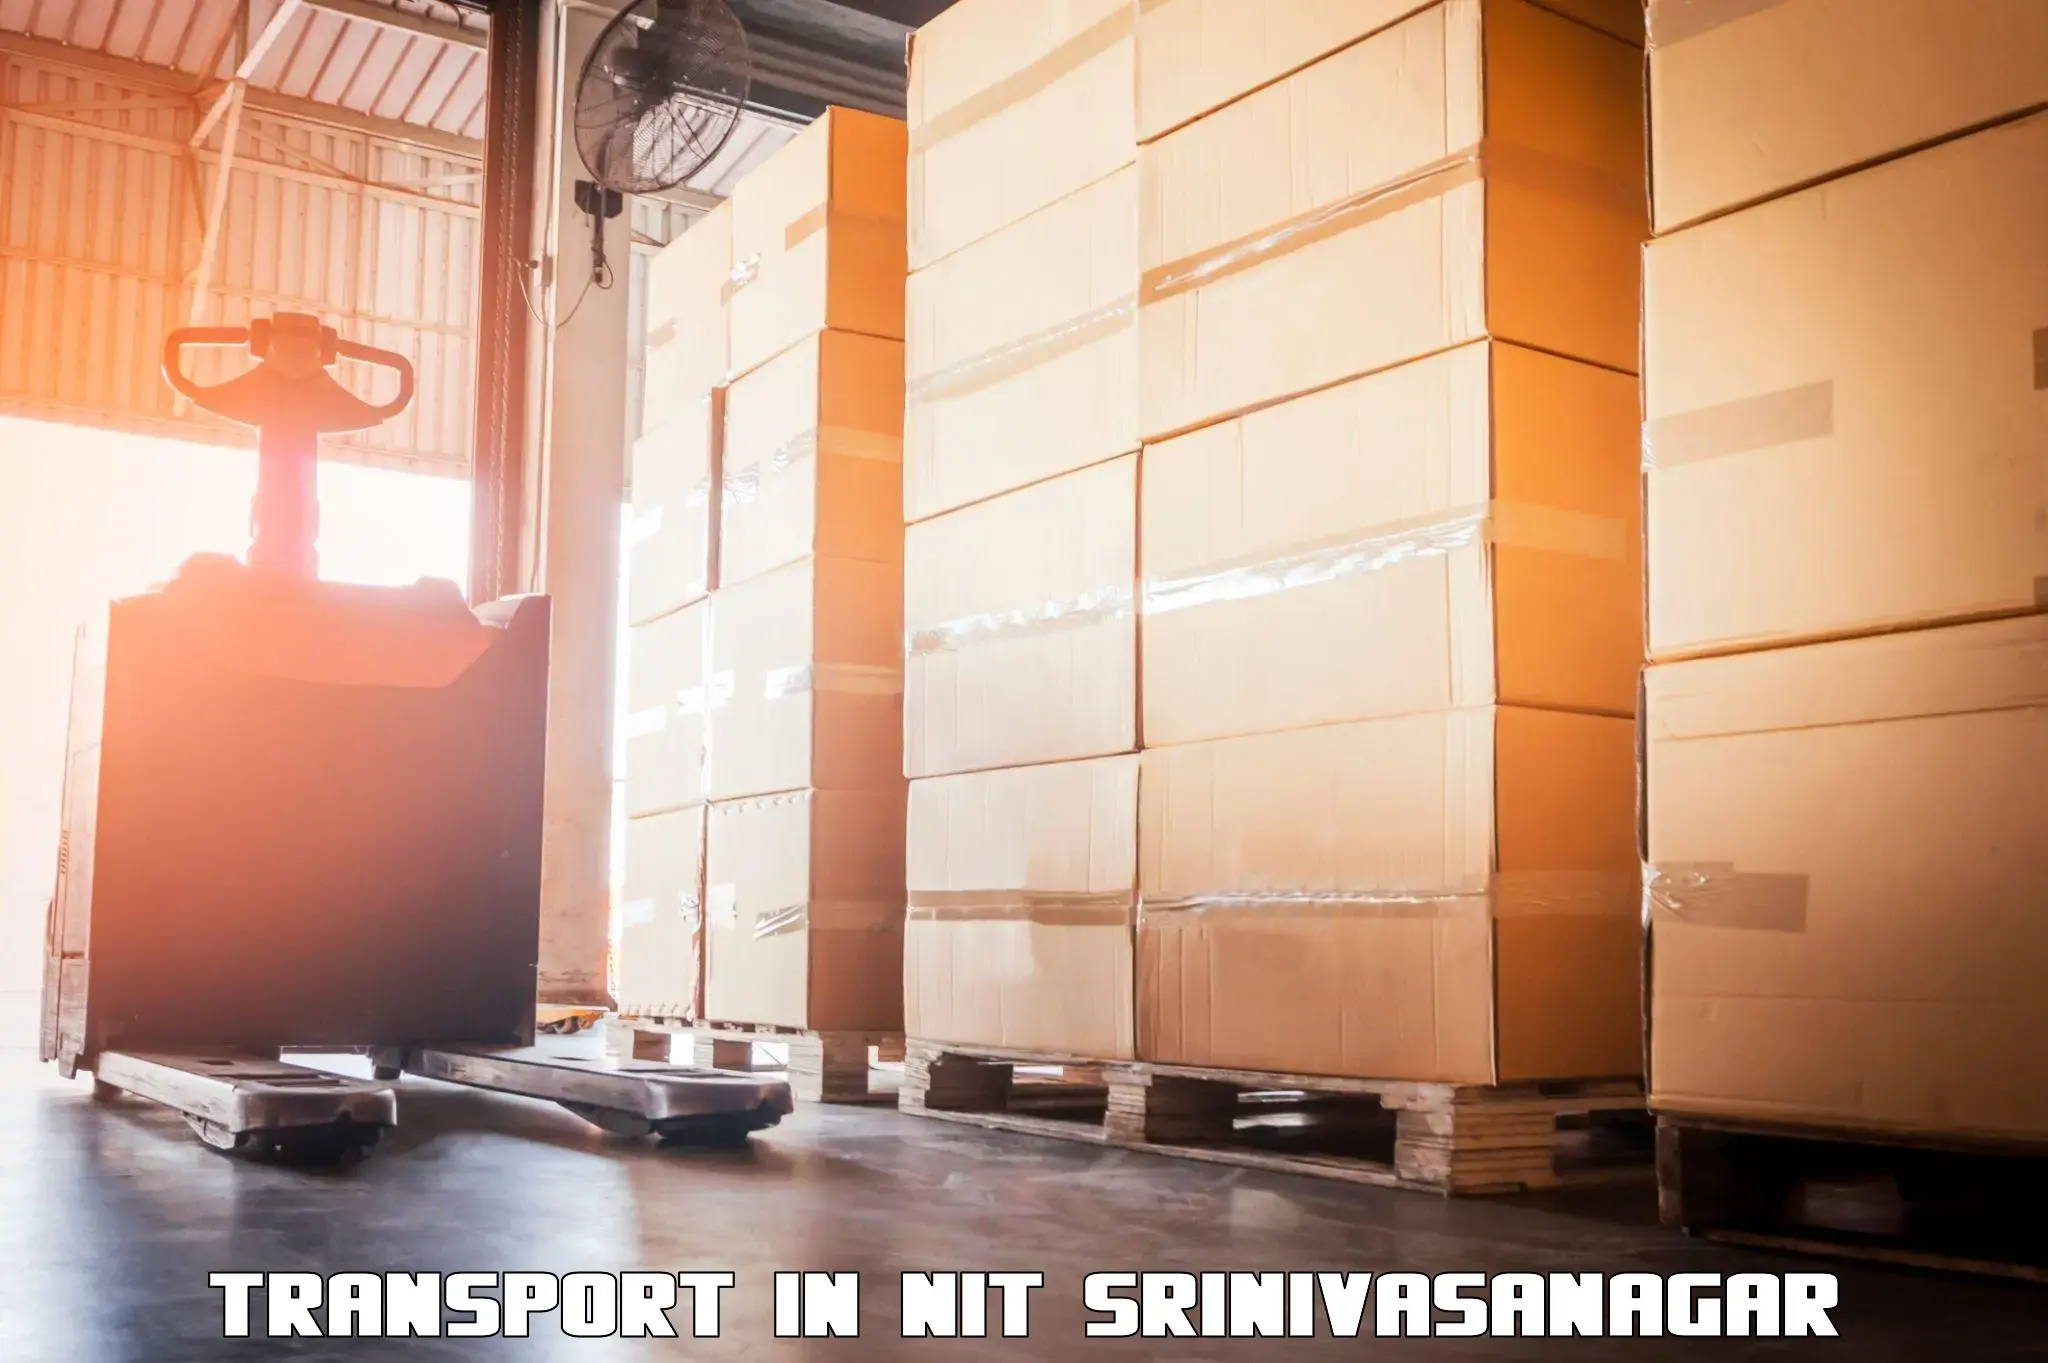 Material transport services in NIT Srinivasanagar